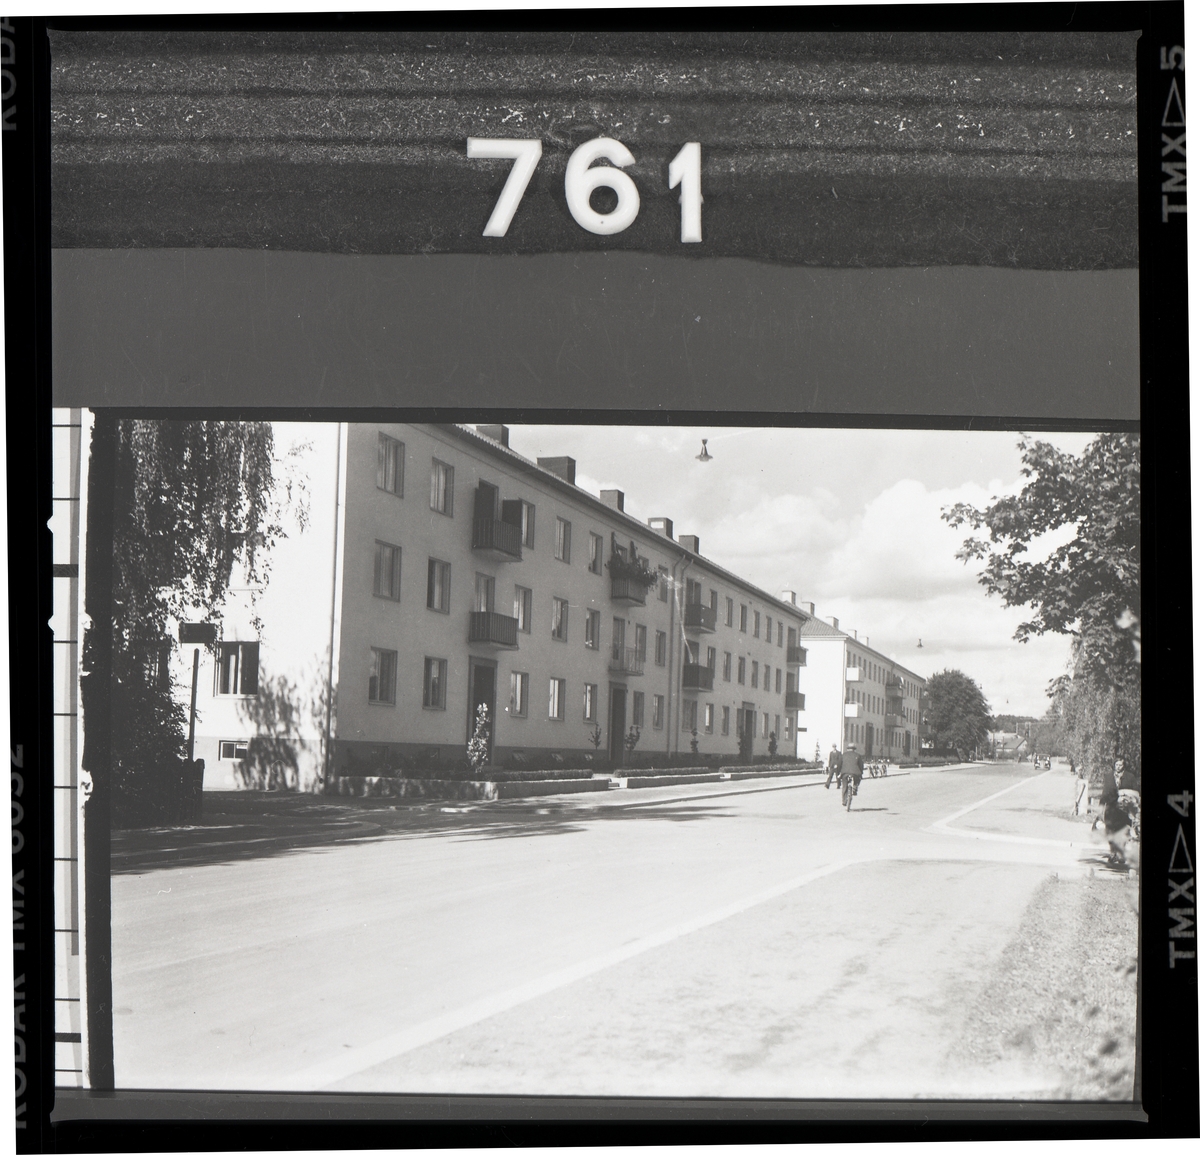 Bostadshus, Engelbrektsgatan 15-17, Västerås.